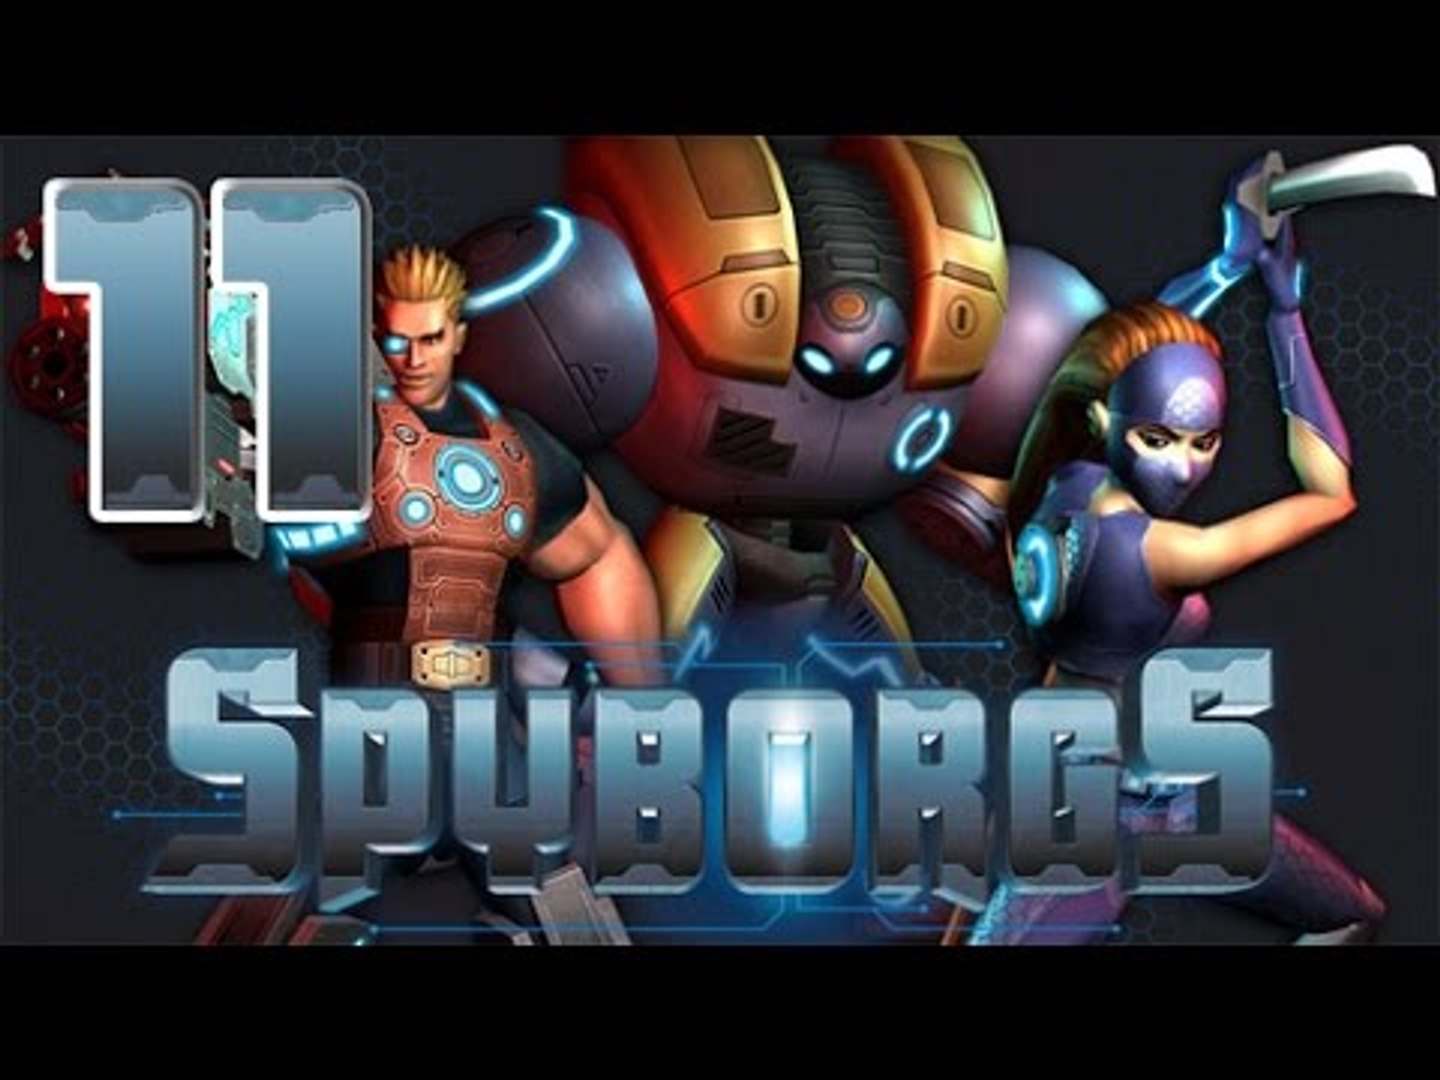 Spyborgs (Wii) Gameplay Walkthrough Part 11 - Final Boss - Ending - video  Dailymotion